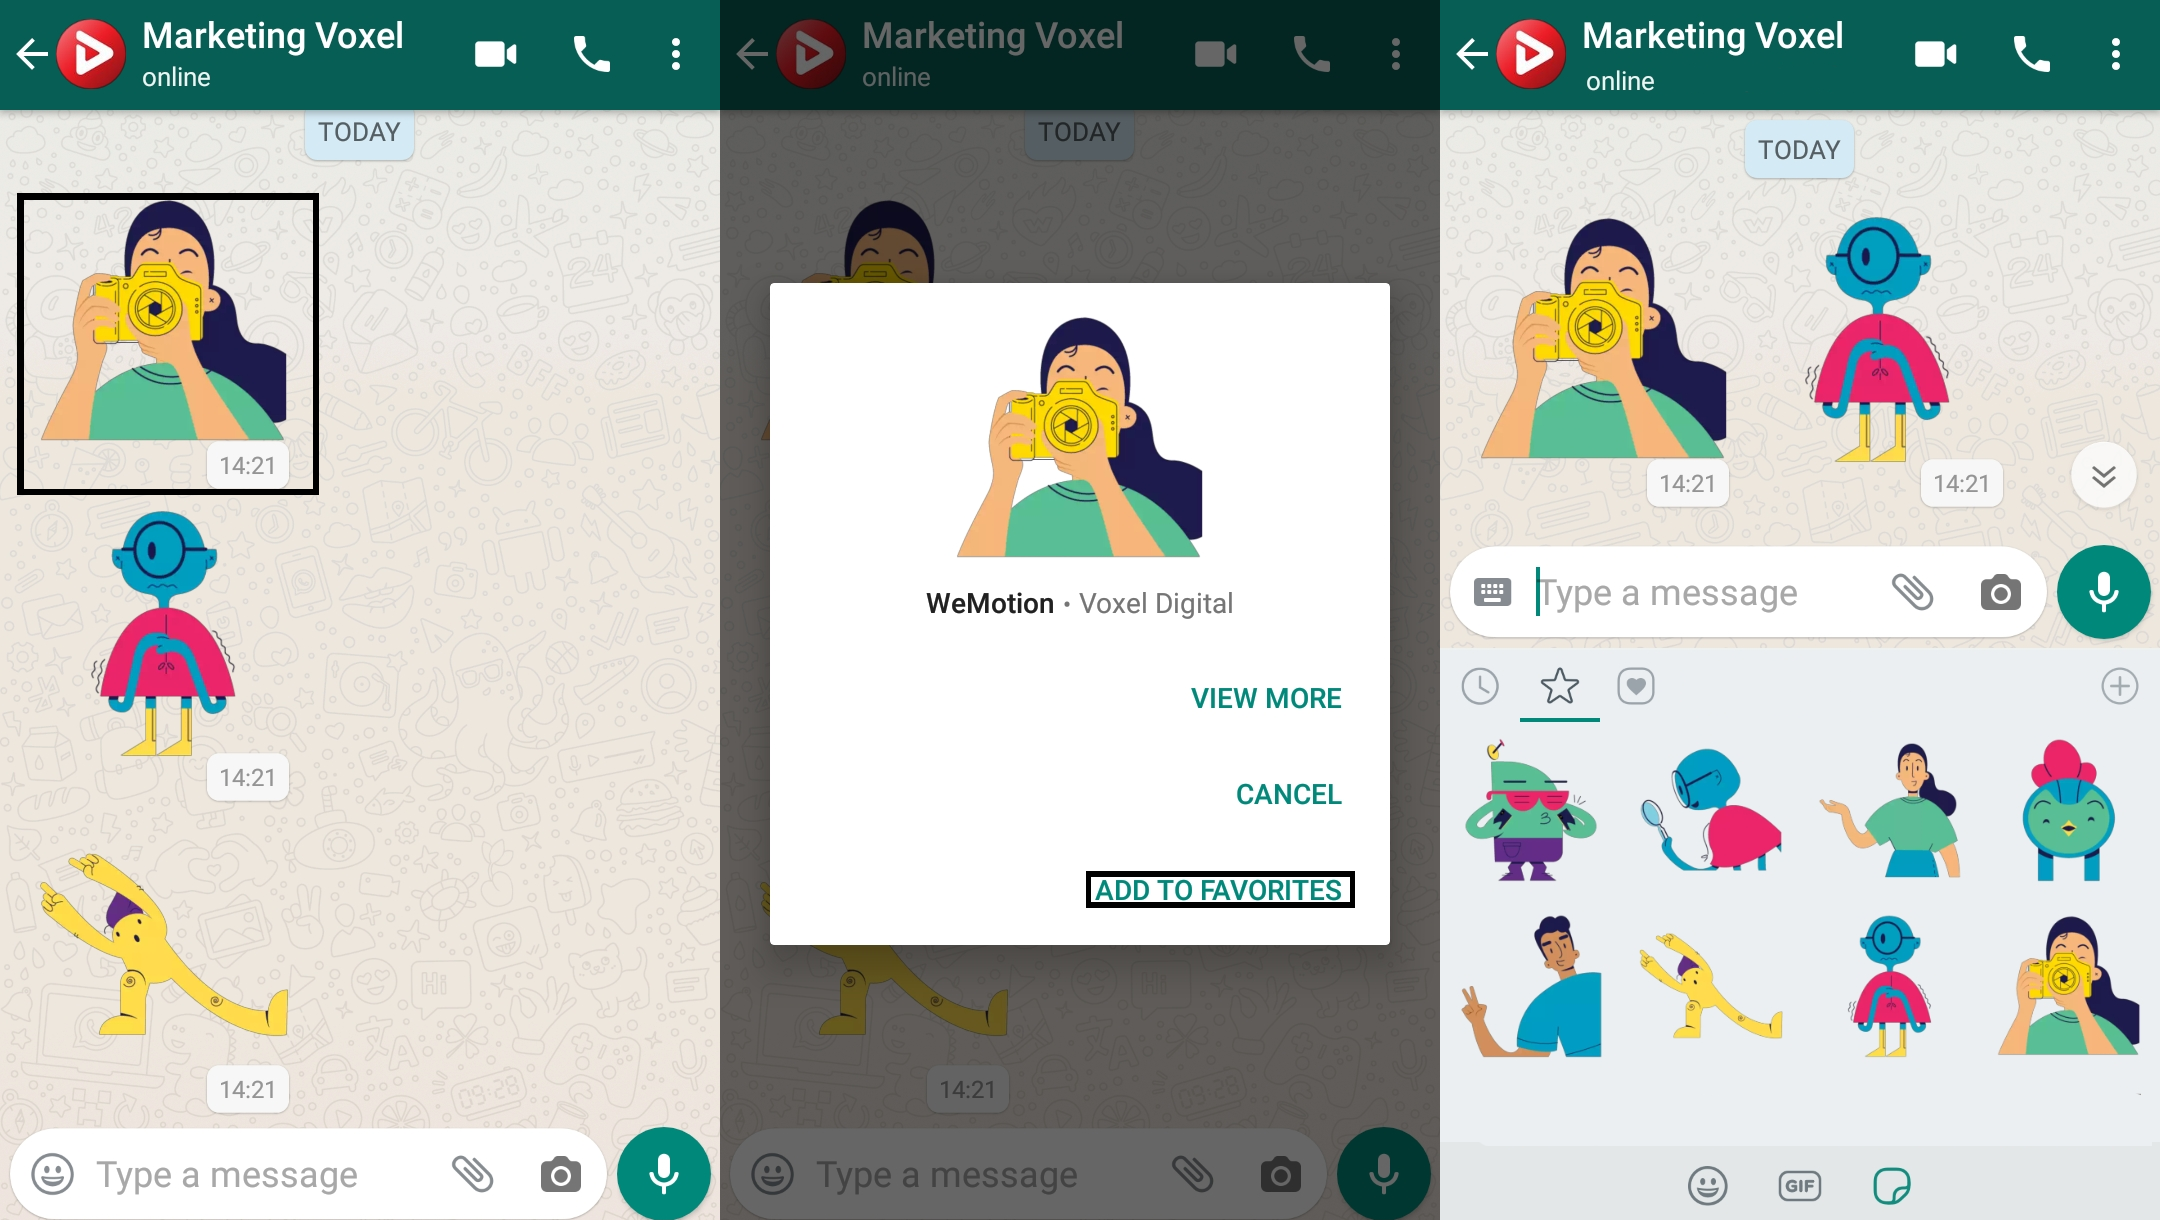 WhatsApp disponibiliza figurinhas animadas para usuários